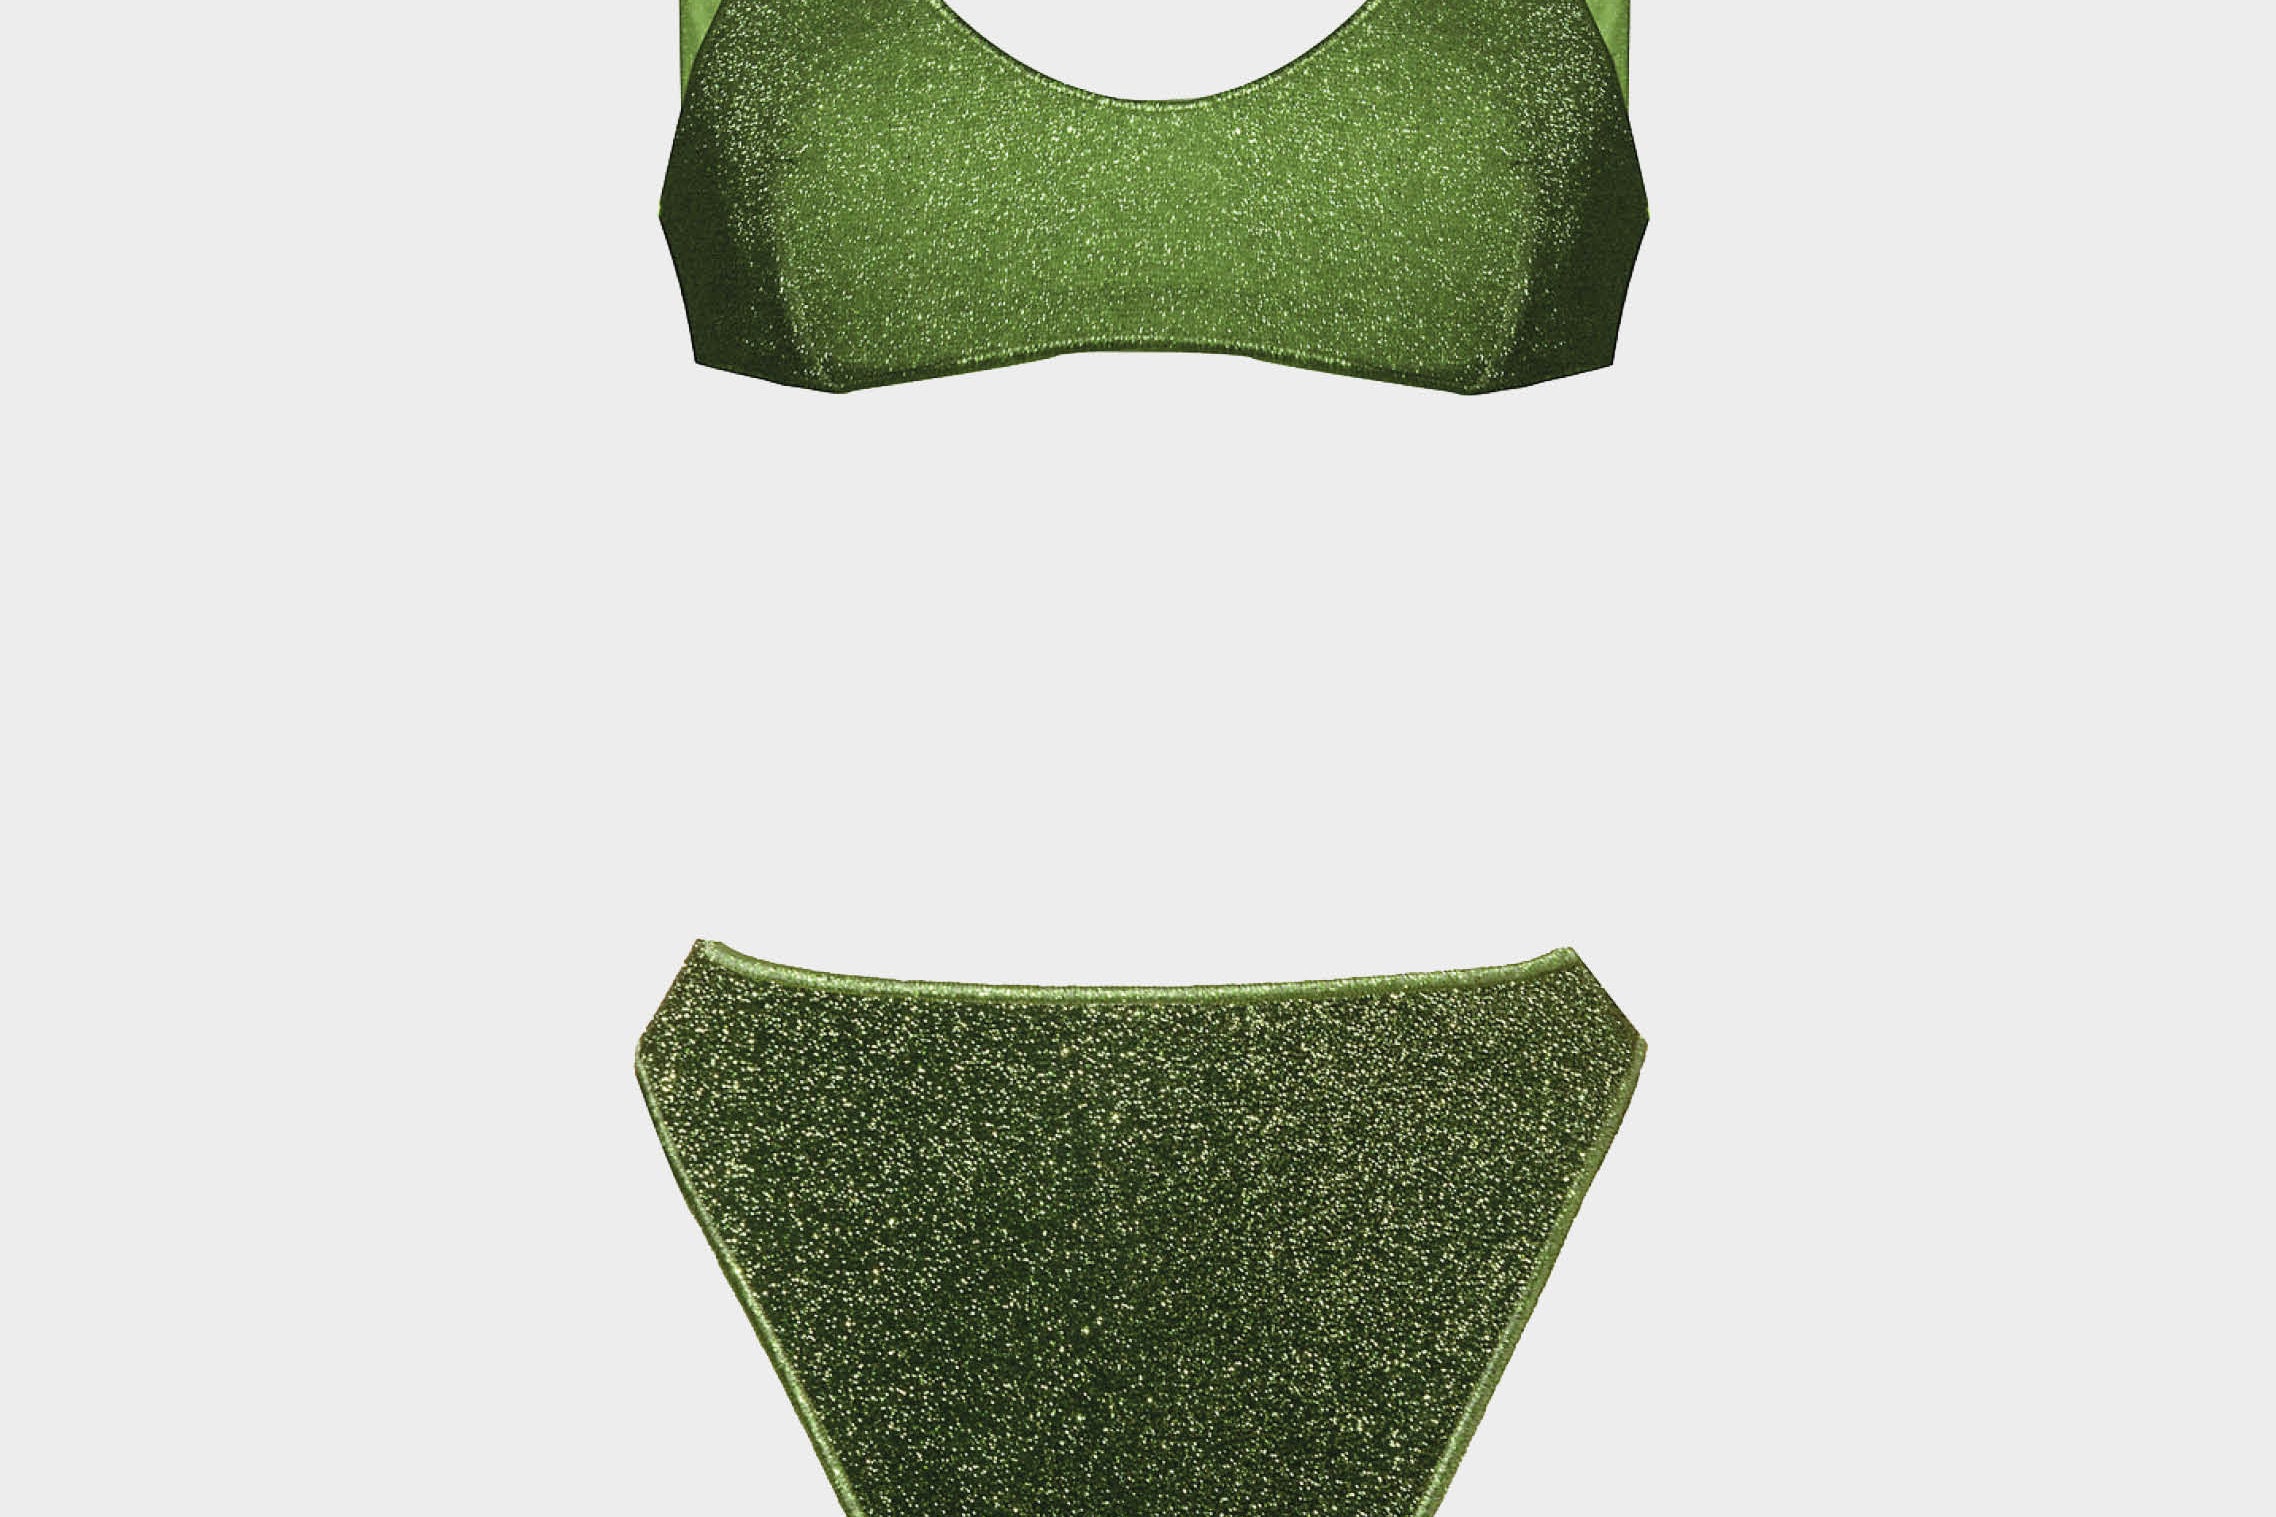 Bikini Lumiere de Oserée estilo 90´s en color verde con purpurina. Braguita talle alto y top sporty. Envíos gratuitos a partir de 200€. Devoluciones fáciles.